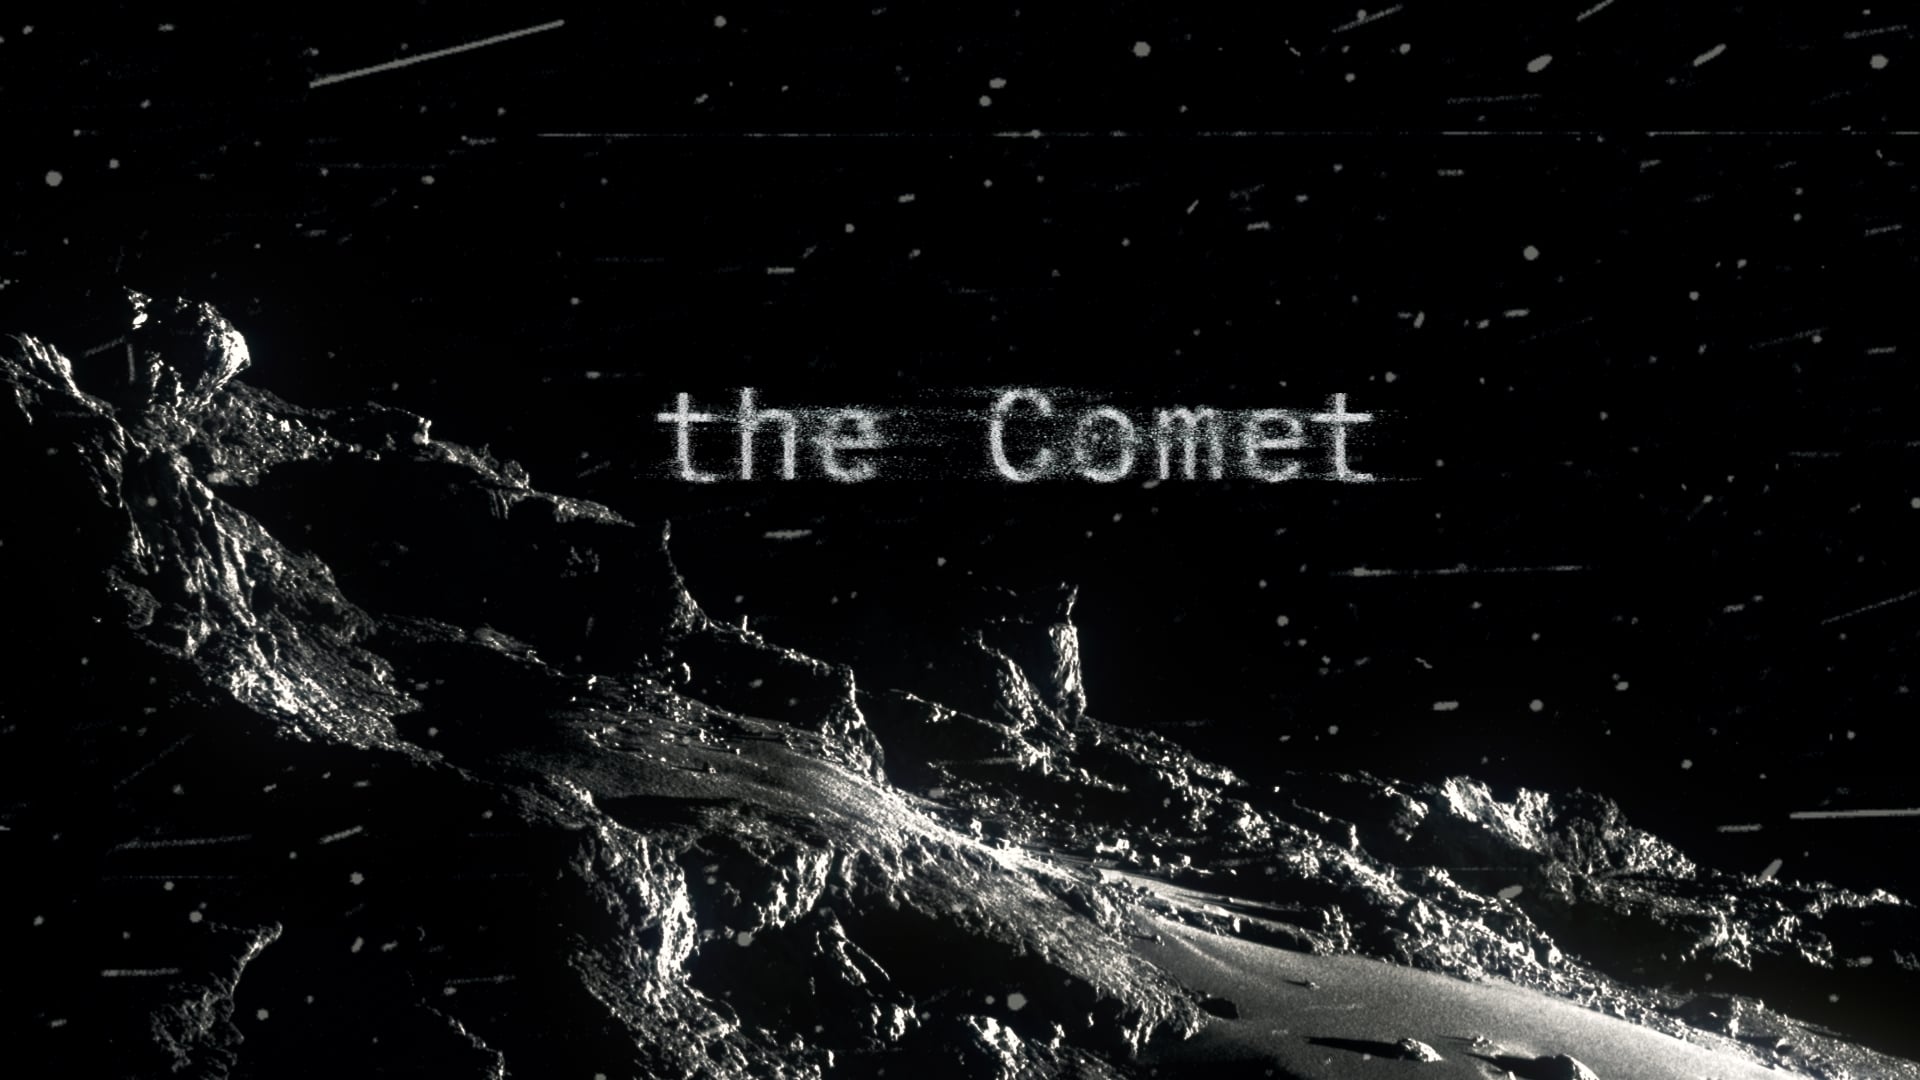 Thumbnail des Videos von "The Comet"